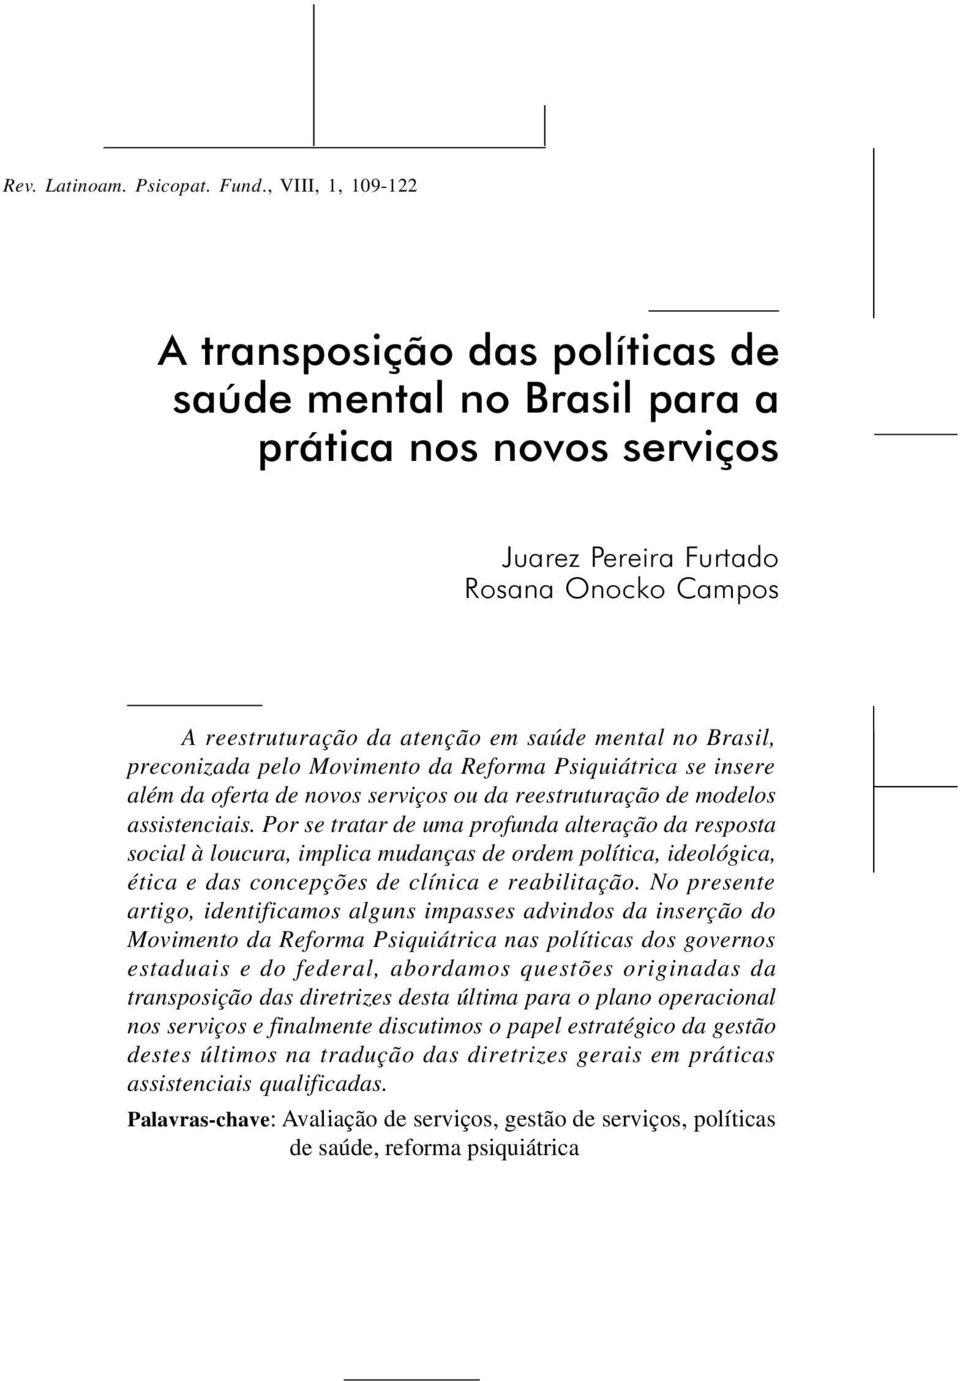 Brasil, preconizada pelo Movimento da Reforma Psiquiátrica se insere além da oferta de novos serviços ou da reestruturação de modelos assistenciais.